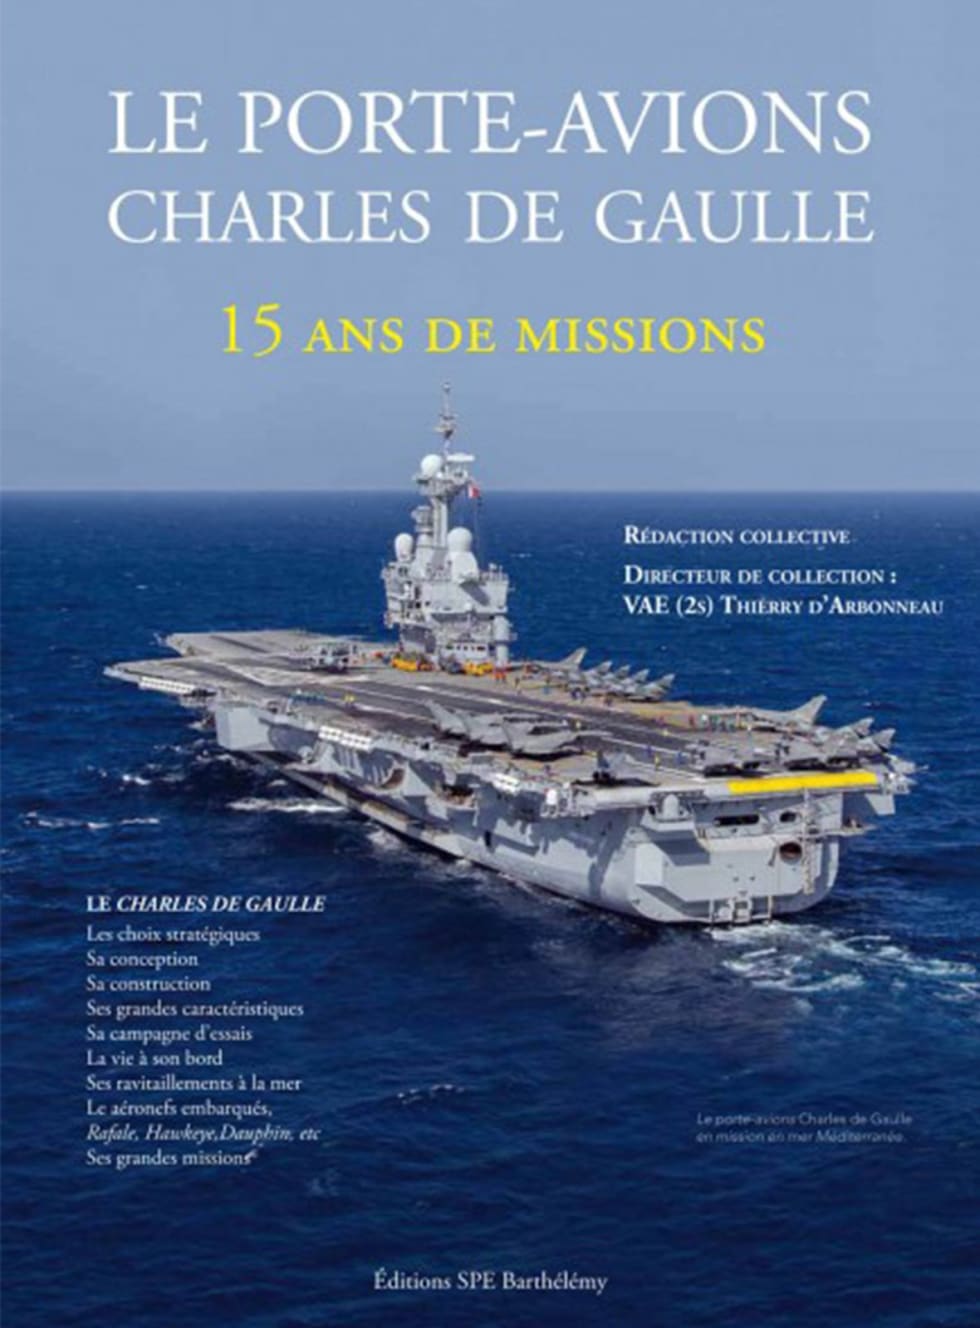 Le Porte-avions Charles de Gaulle : 15 ans de missions